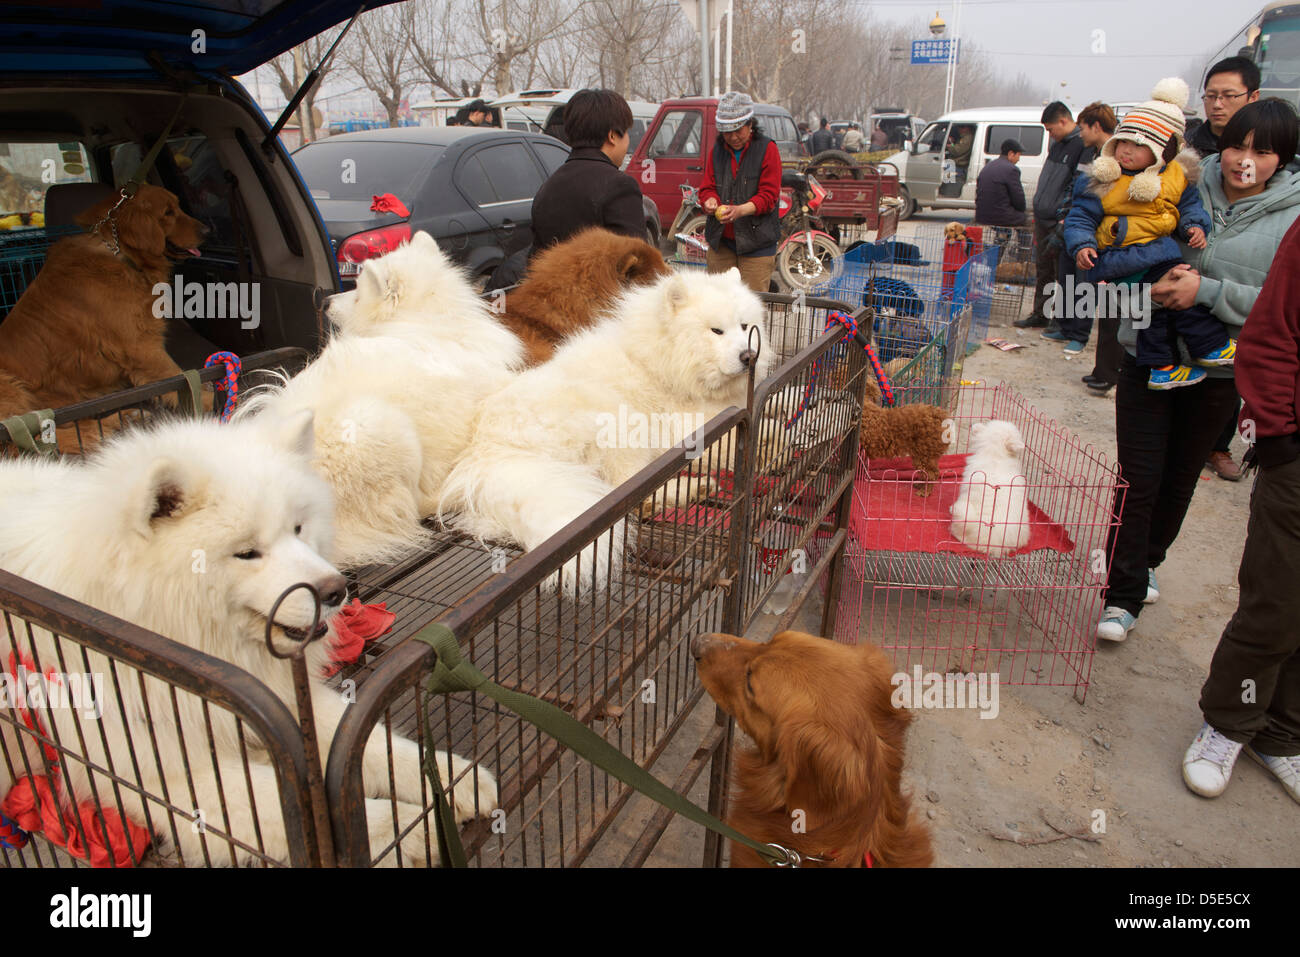 dog market